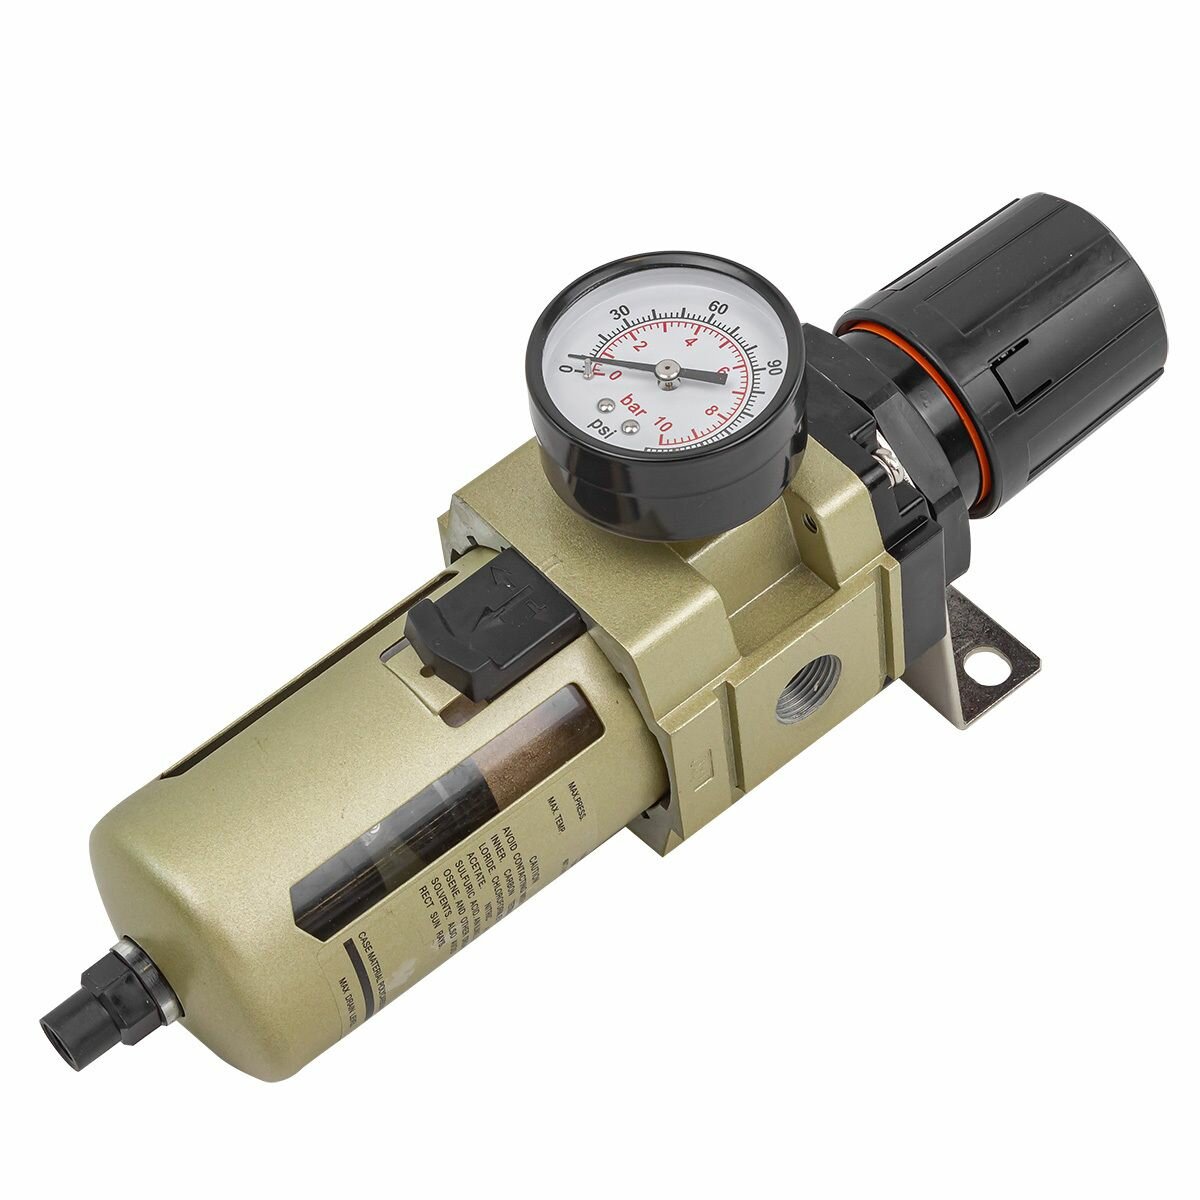 Фильтр-регулятор с индикатором давления для пневмосистем 3/4' (автоматич. слив, 10Мк, 4000 л/мин, 0-10bar, раб. температура 5-60гр) Forsage F-AW4000-06D